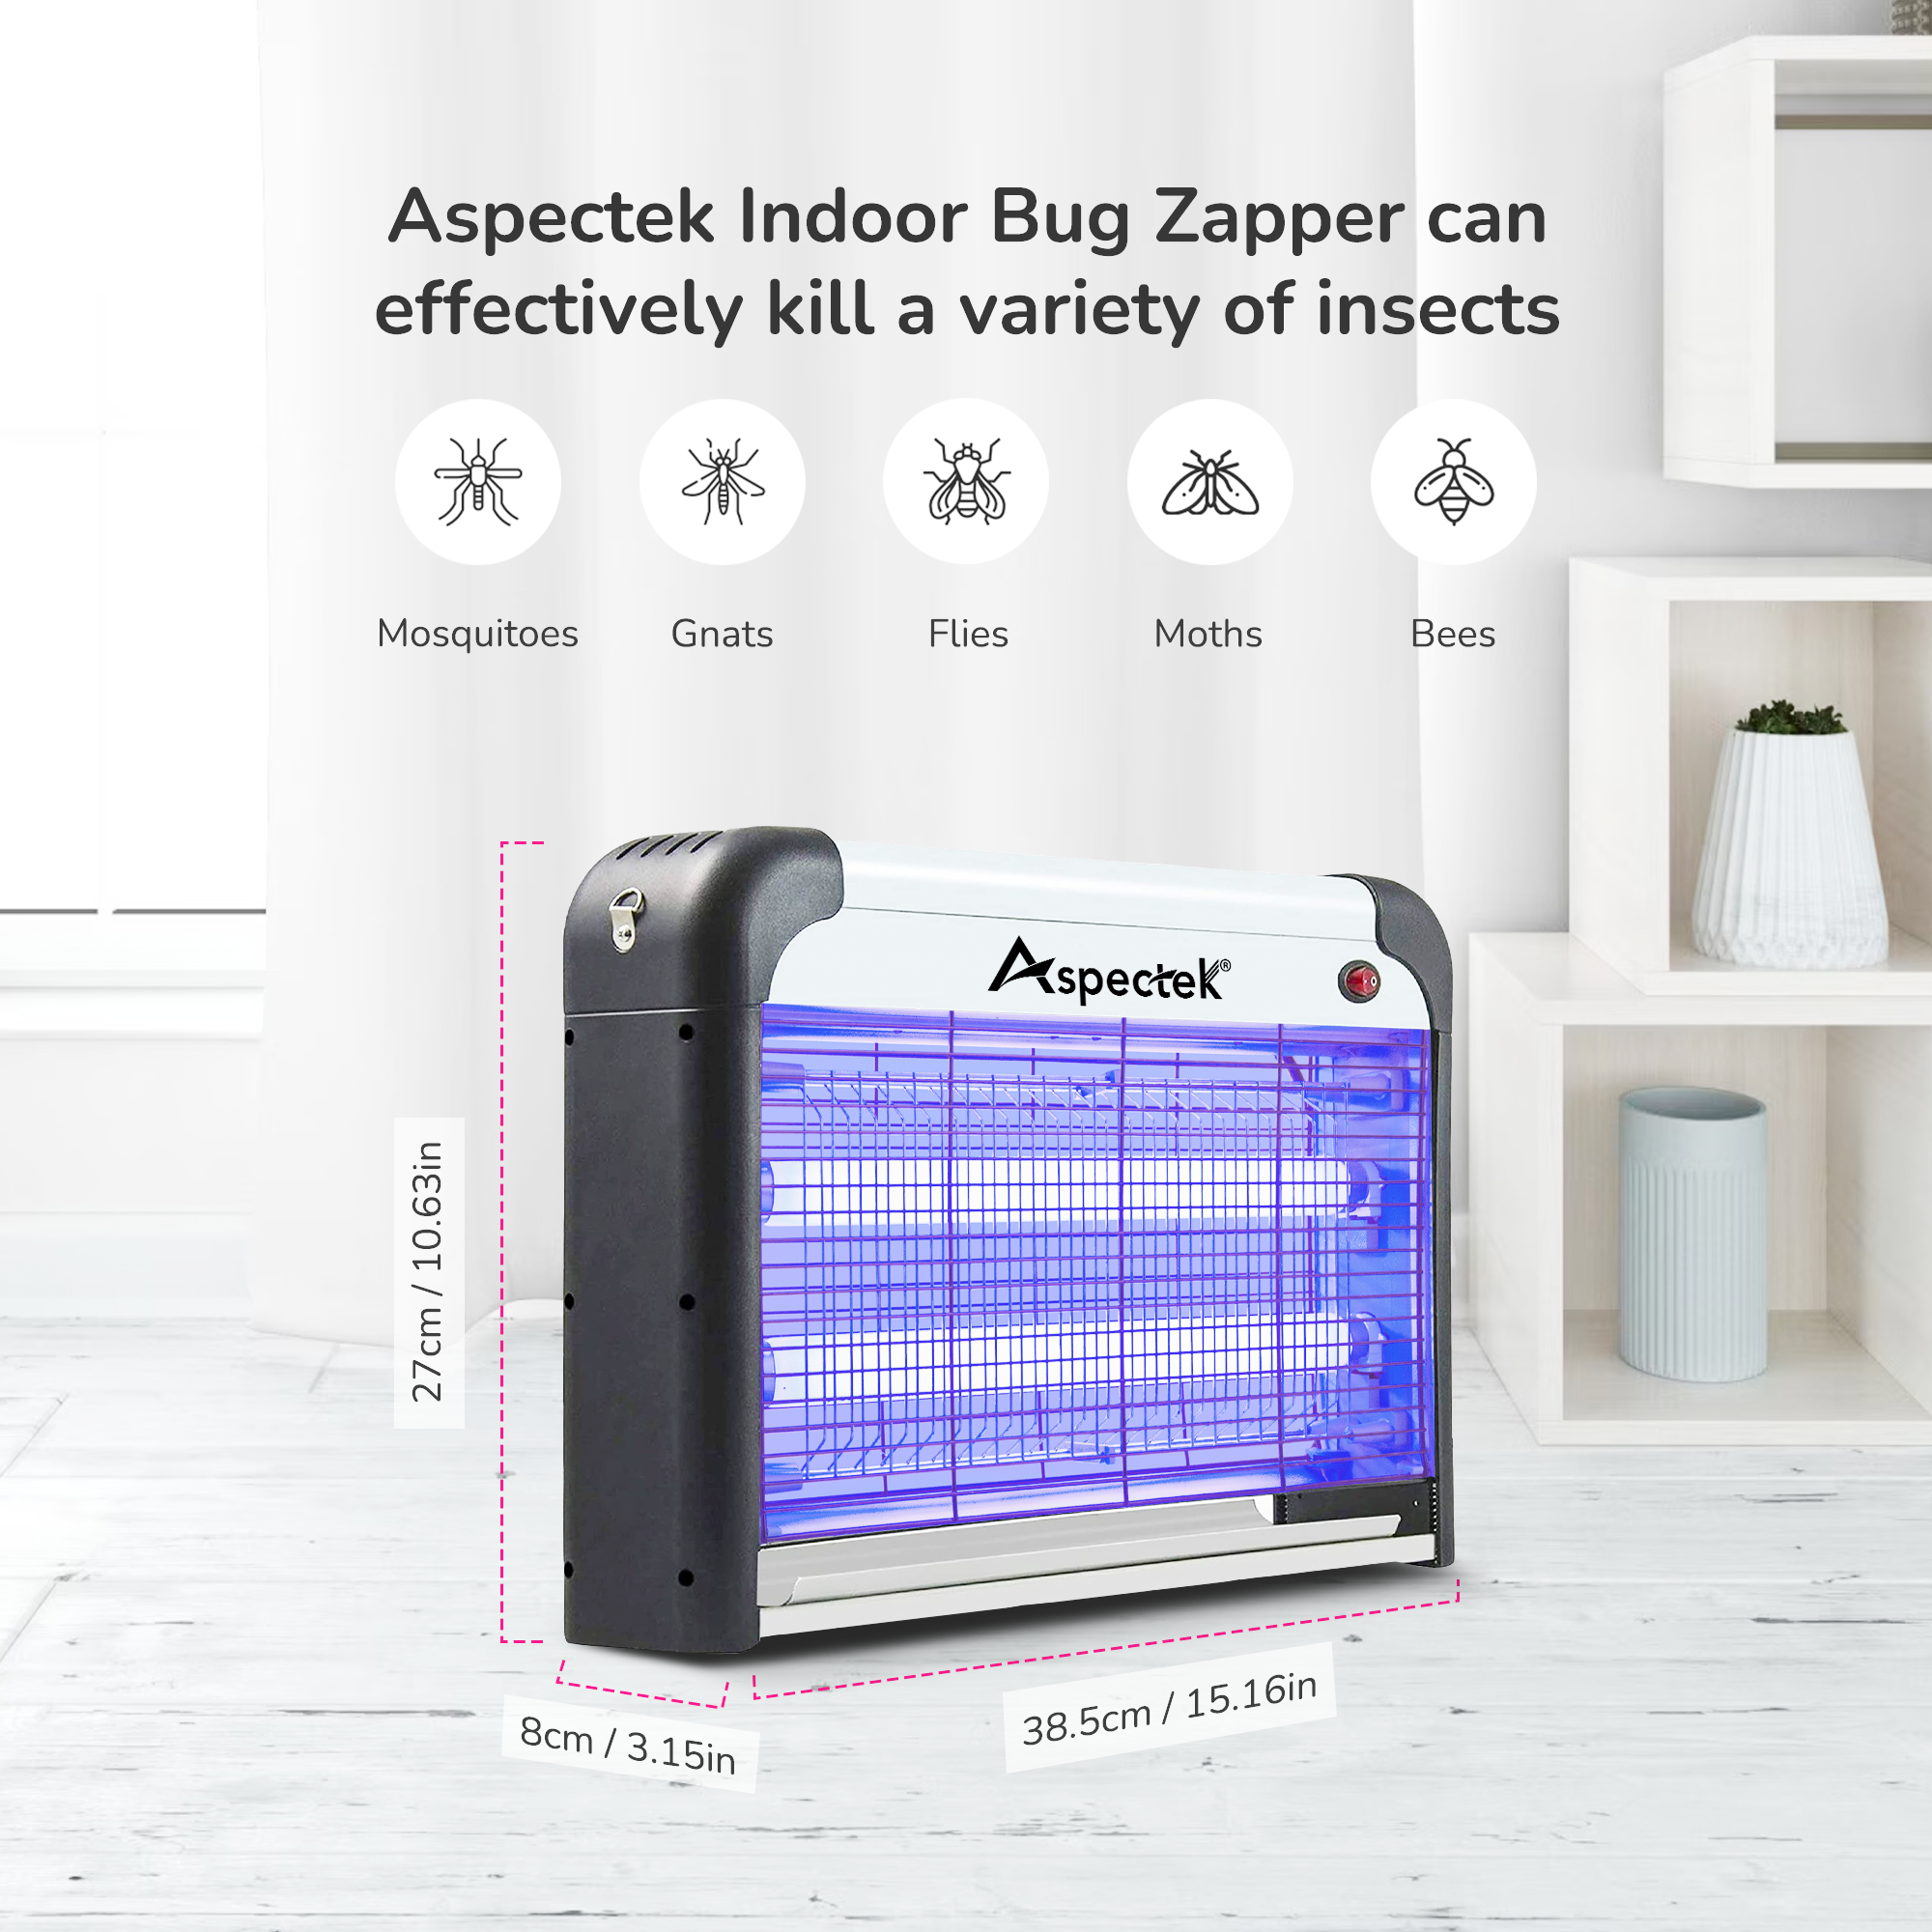 Aspectek 20W Indoor Bug Zapper Includes 2 Replacement Bulbs SOLID BLACK